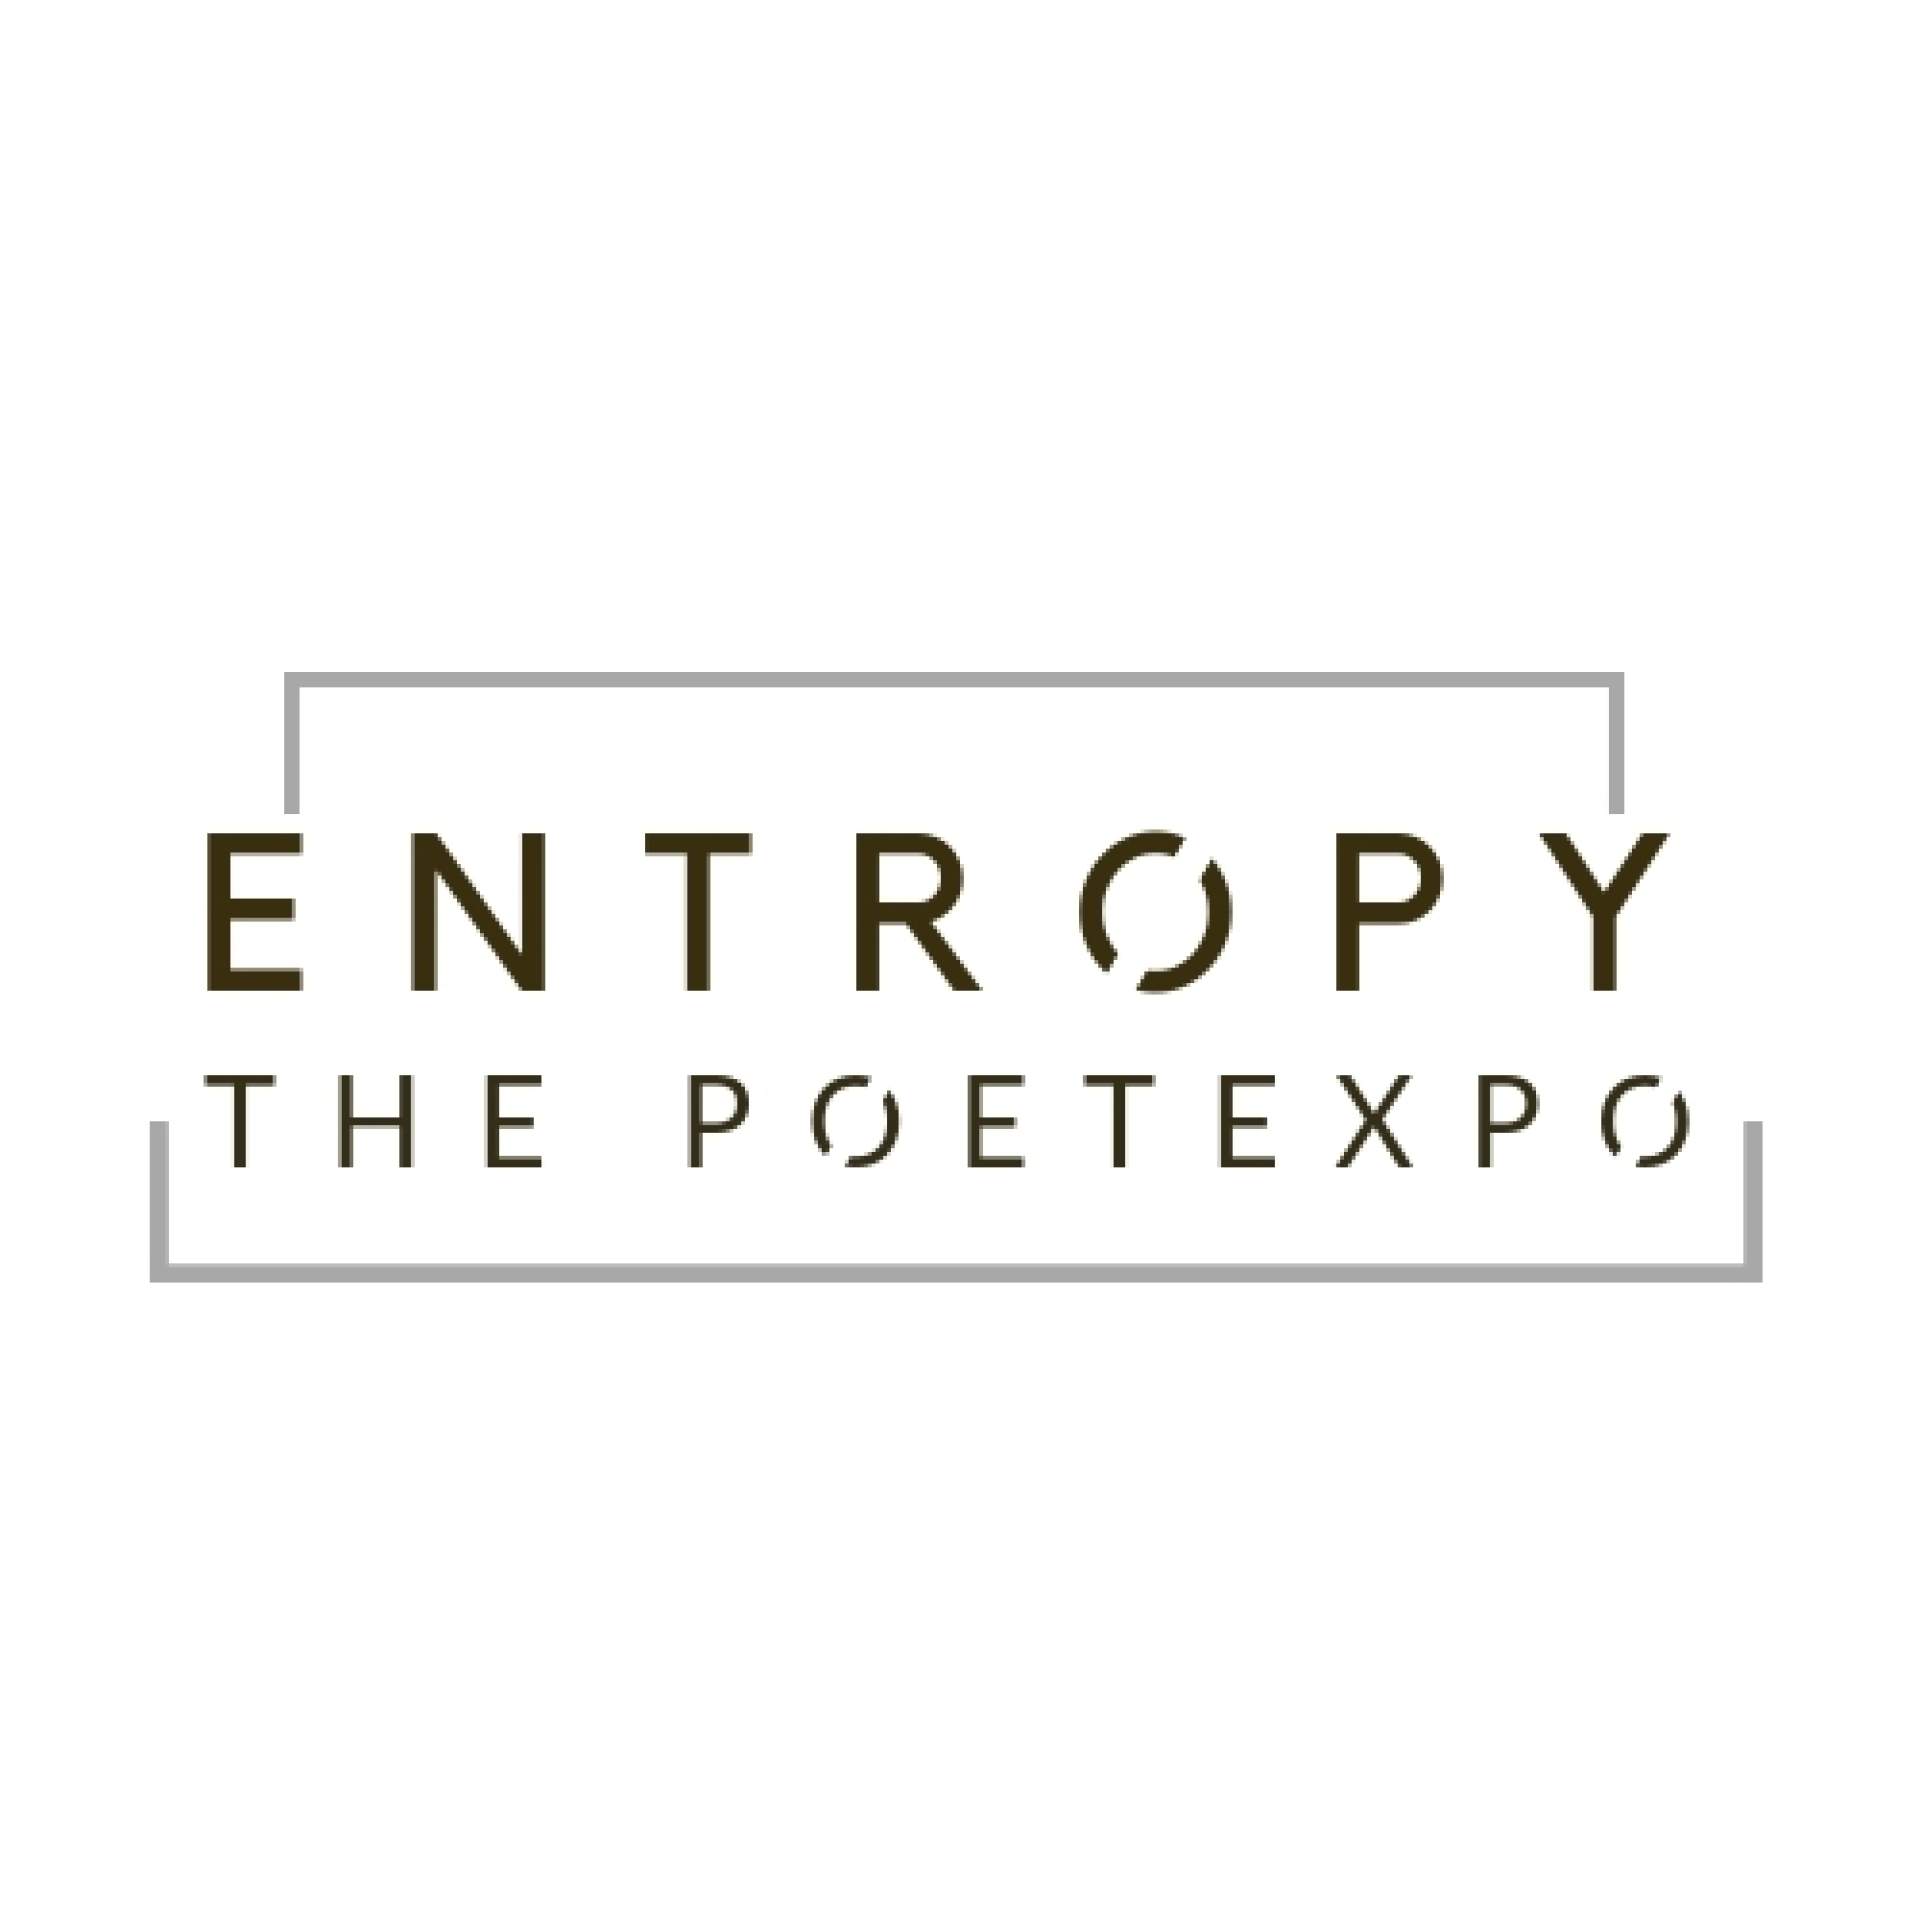 ENTROPY: THE POETEXPO